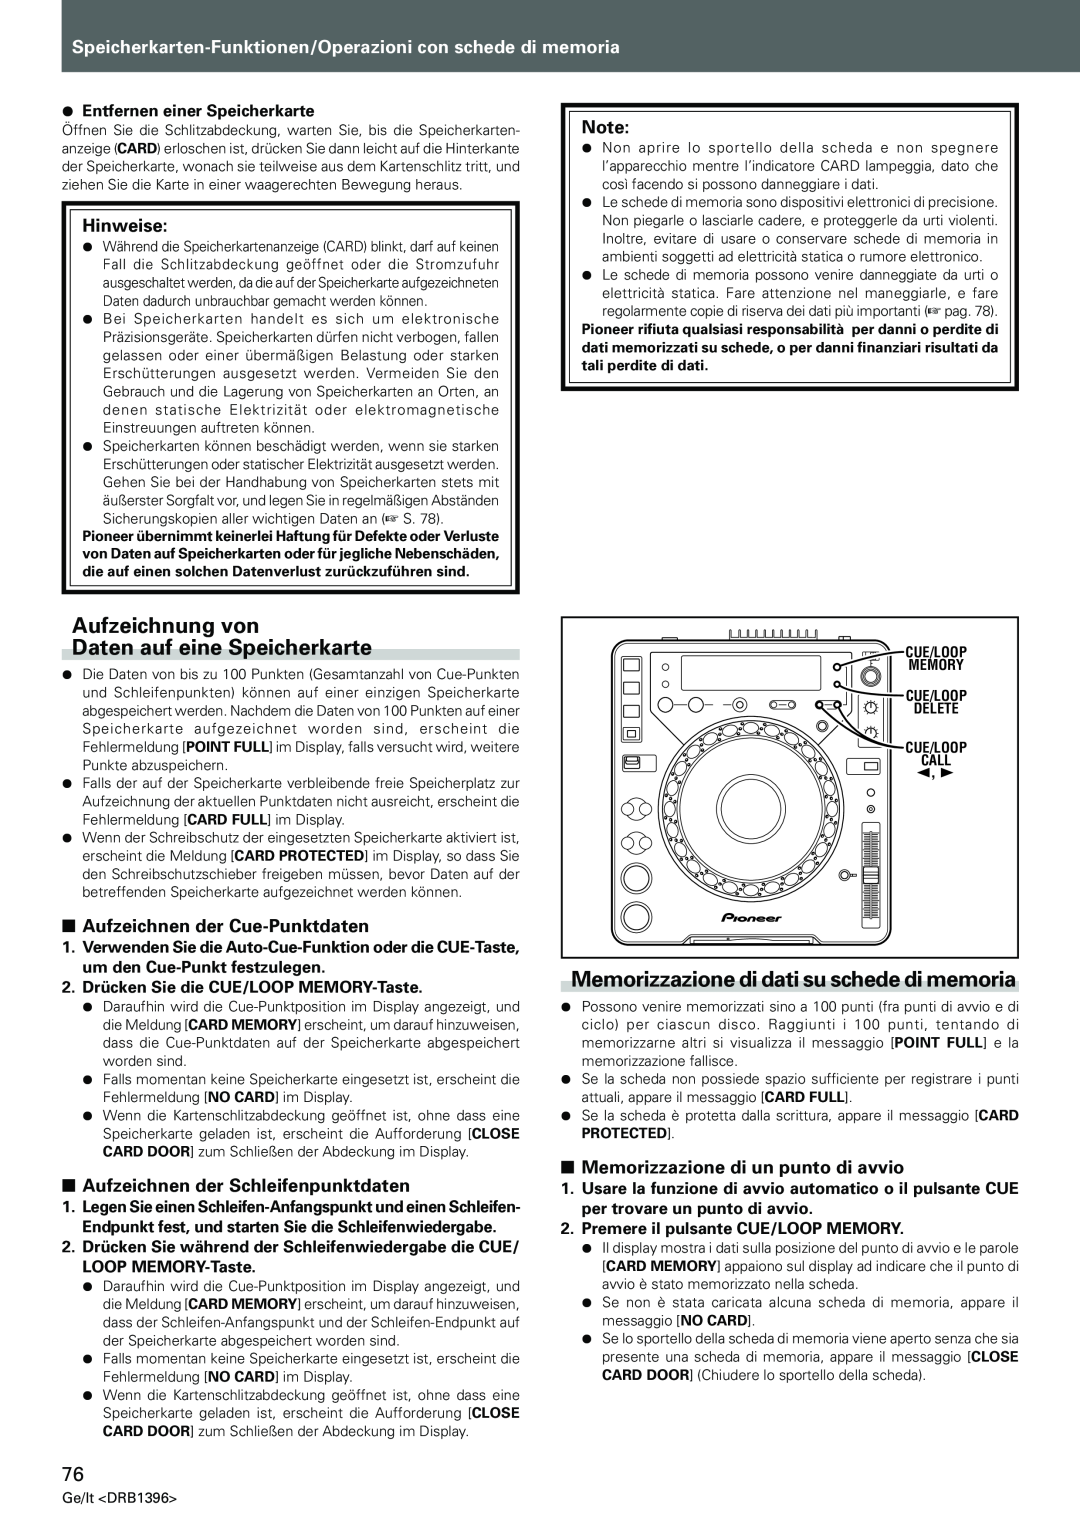 Pioneer CDJ-1000MK3 Aufzeichnung von Daten auf eine Speicherkarte, Memorizzazione di dati su schede di memoria, Hinweise 